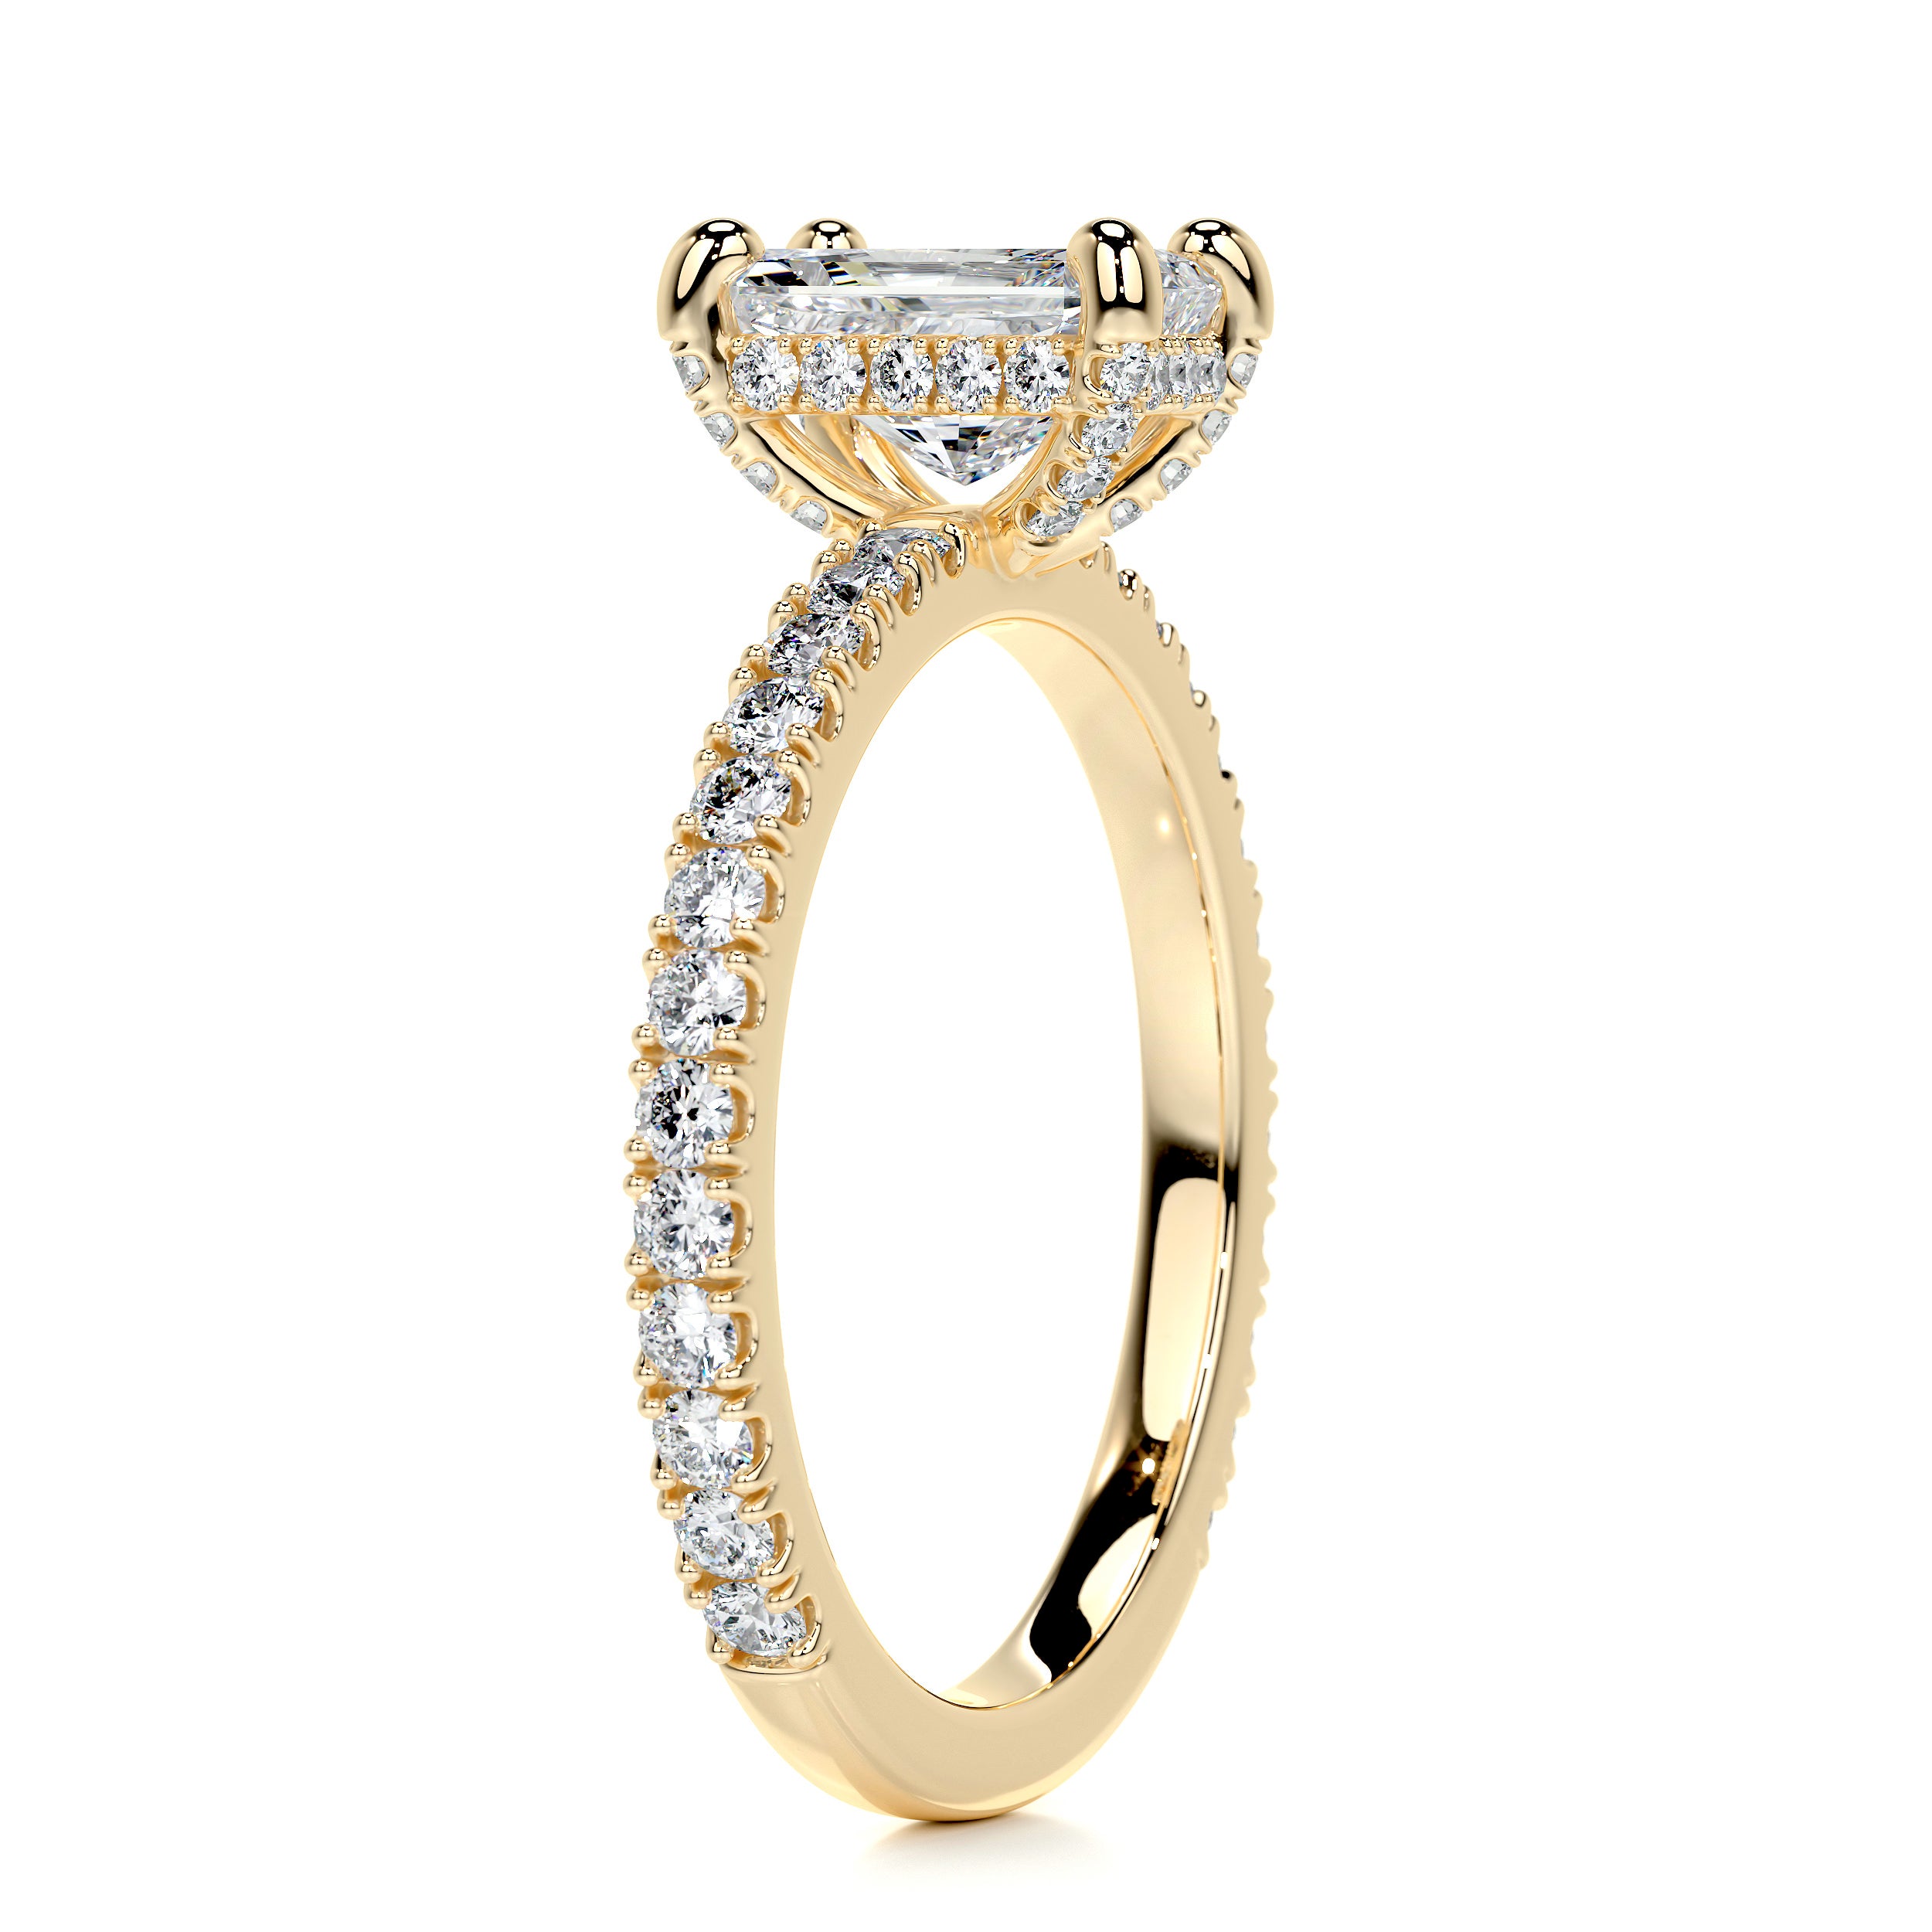 Deborah Diamond Engagement Ring -18K Yellow Gold